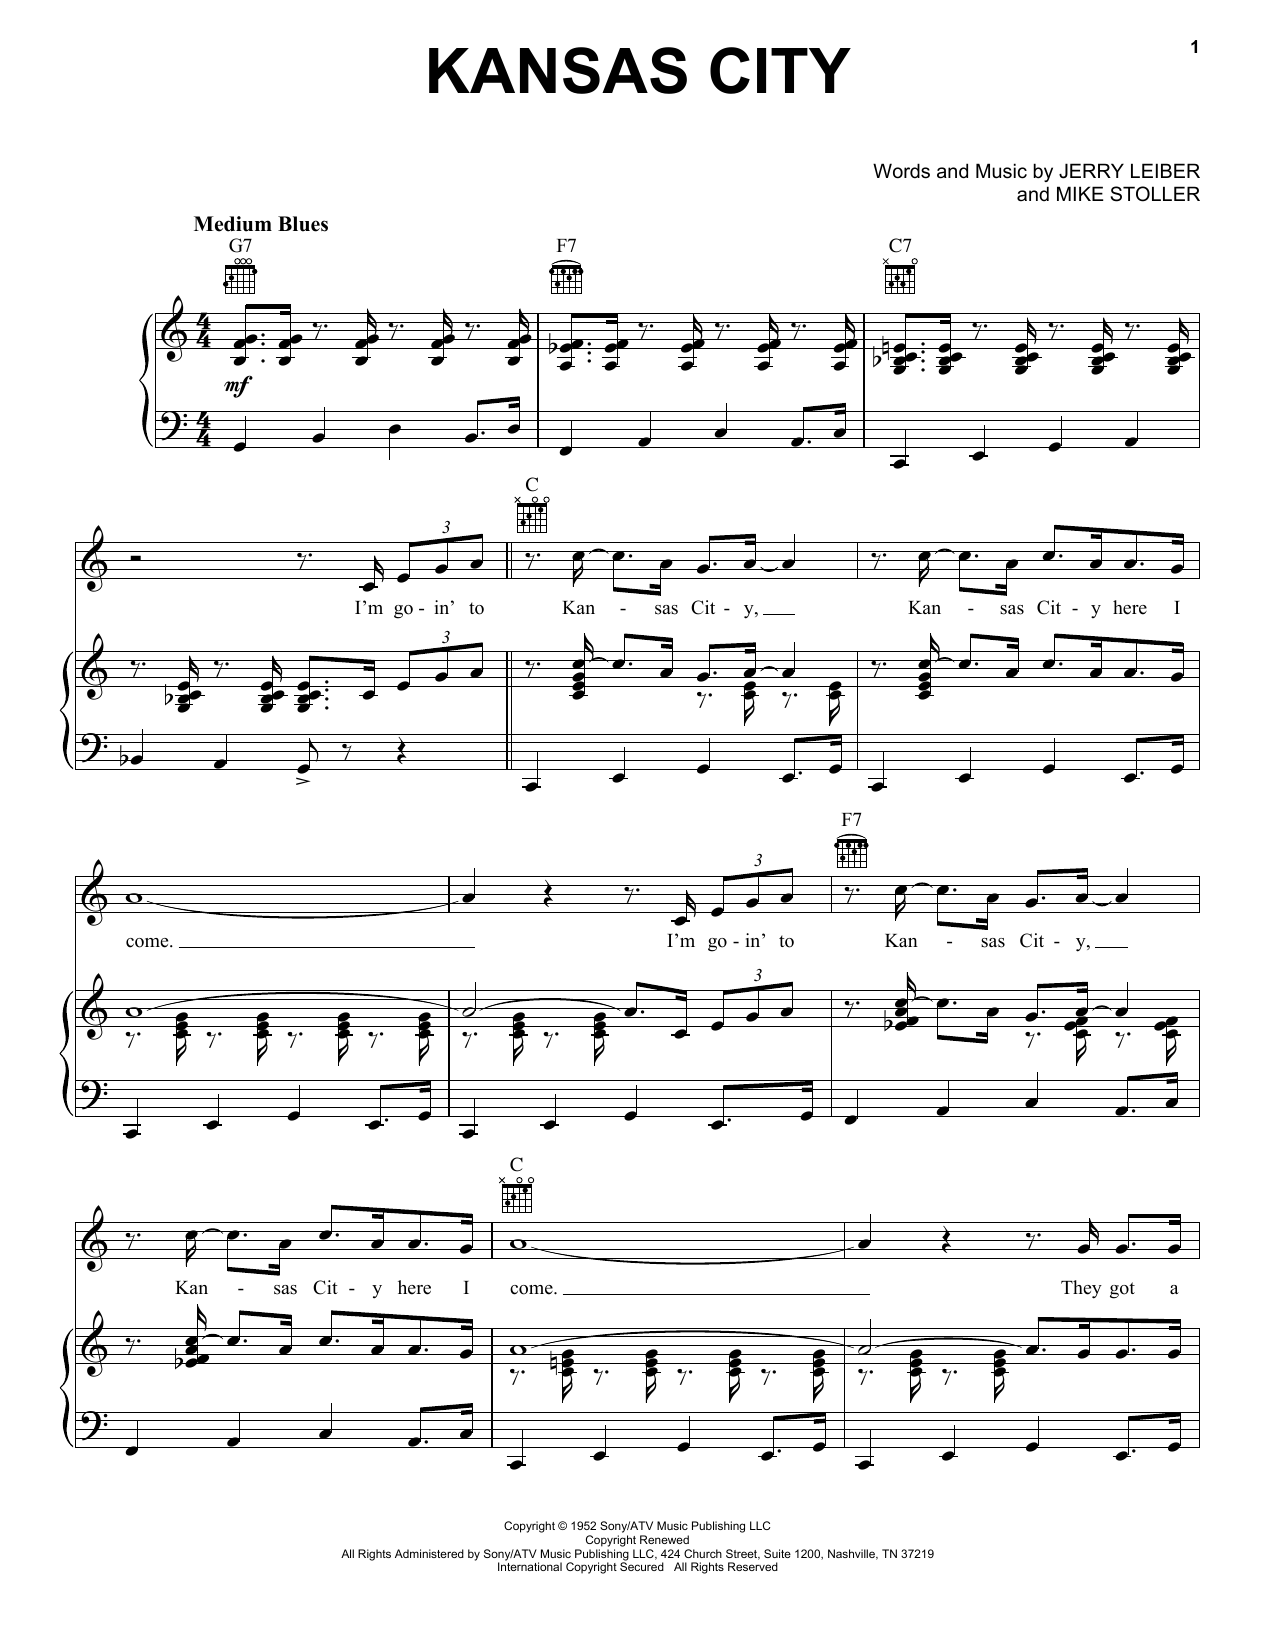 Wilbert Harrison Kansas City Sheet Music Notes & Chords for Ukulele - Download or Print PDF